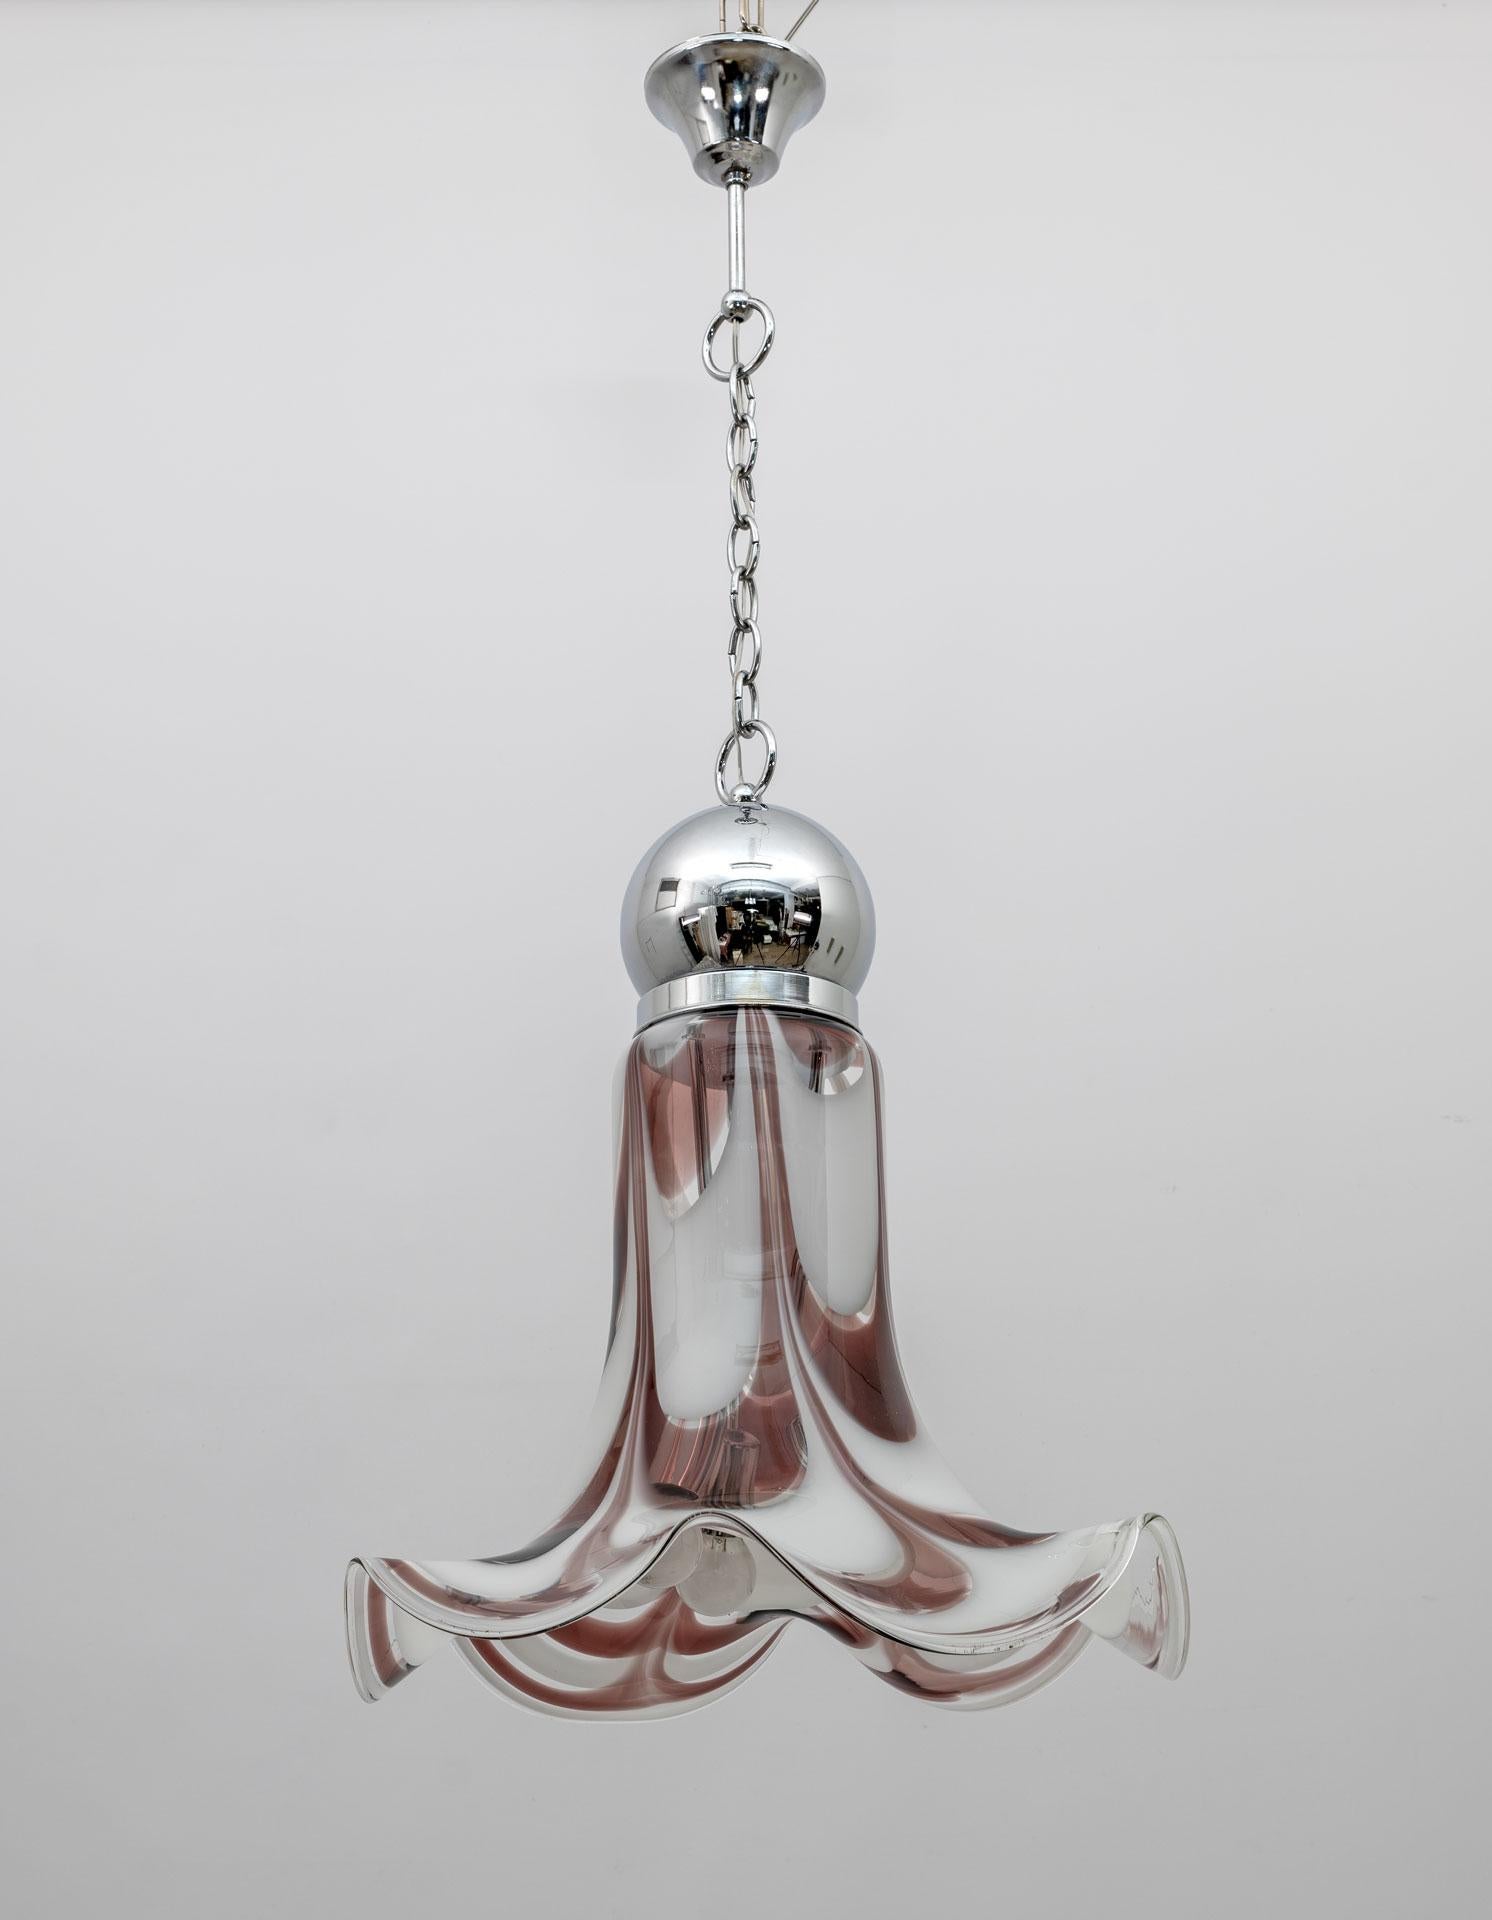 Ce lustre de plafond se caractérise par un abat-jour en forme de cloche en verre de Murano blanc et rouge brique et en métal chromé, produit par la verrerie AVMazzega dans les années 70